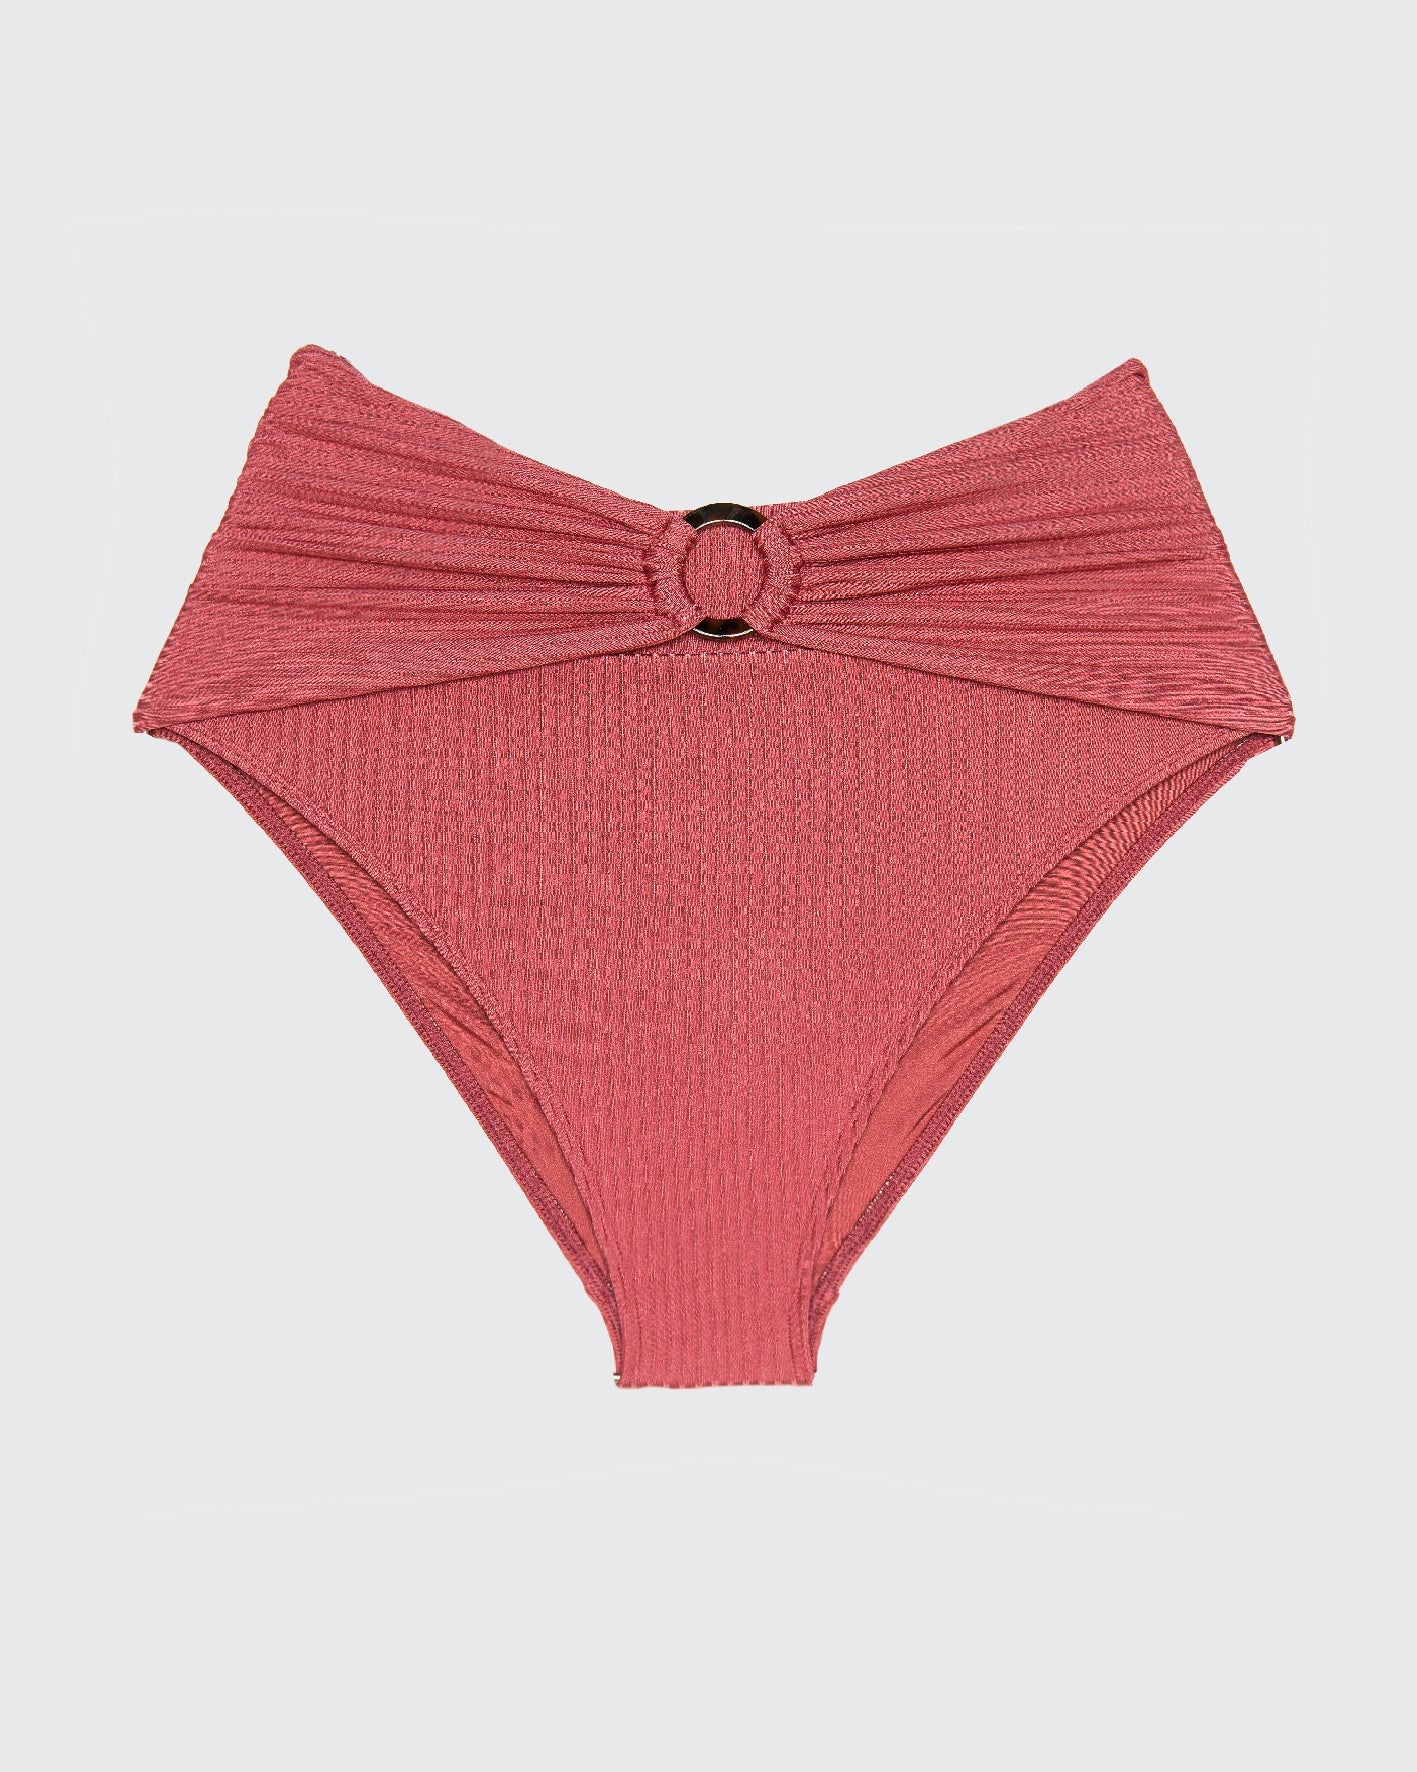 PUMA BOTTOM PINK RIB - BIKINI -BiliBlond Swimwear